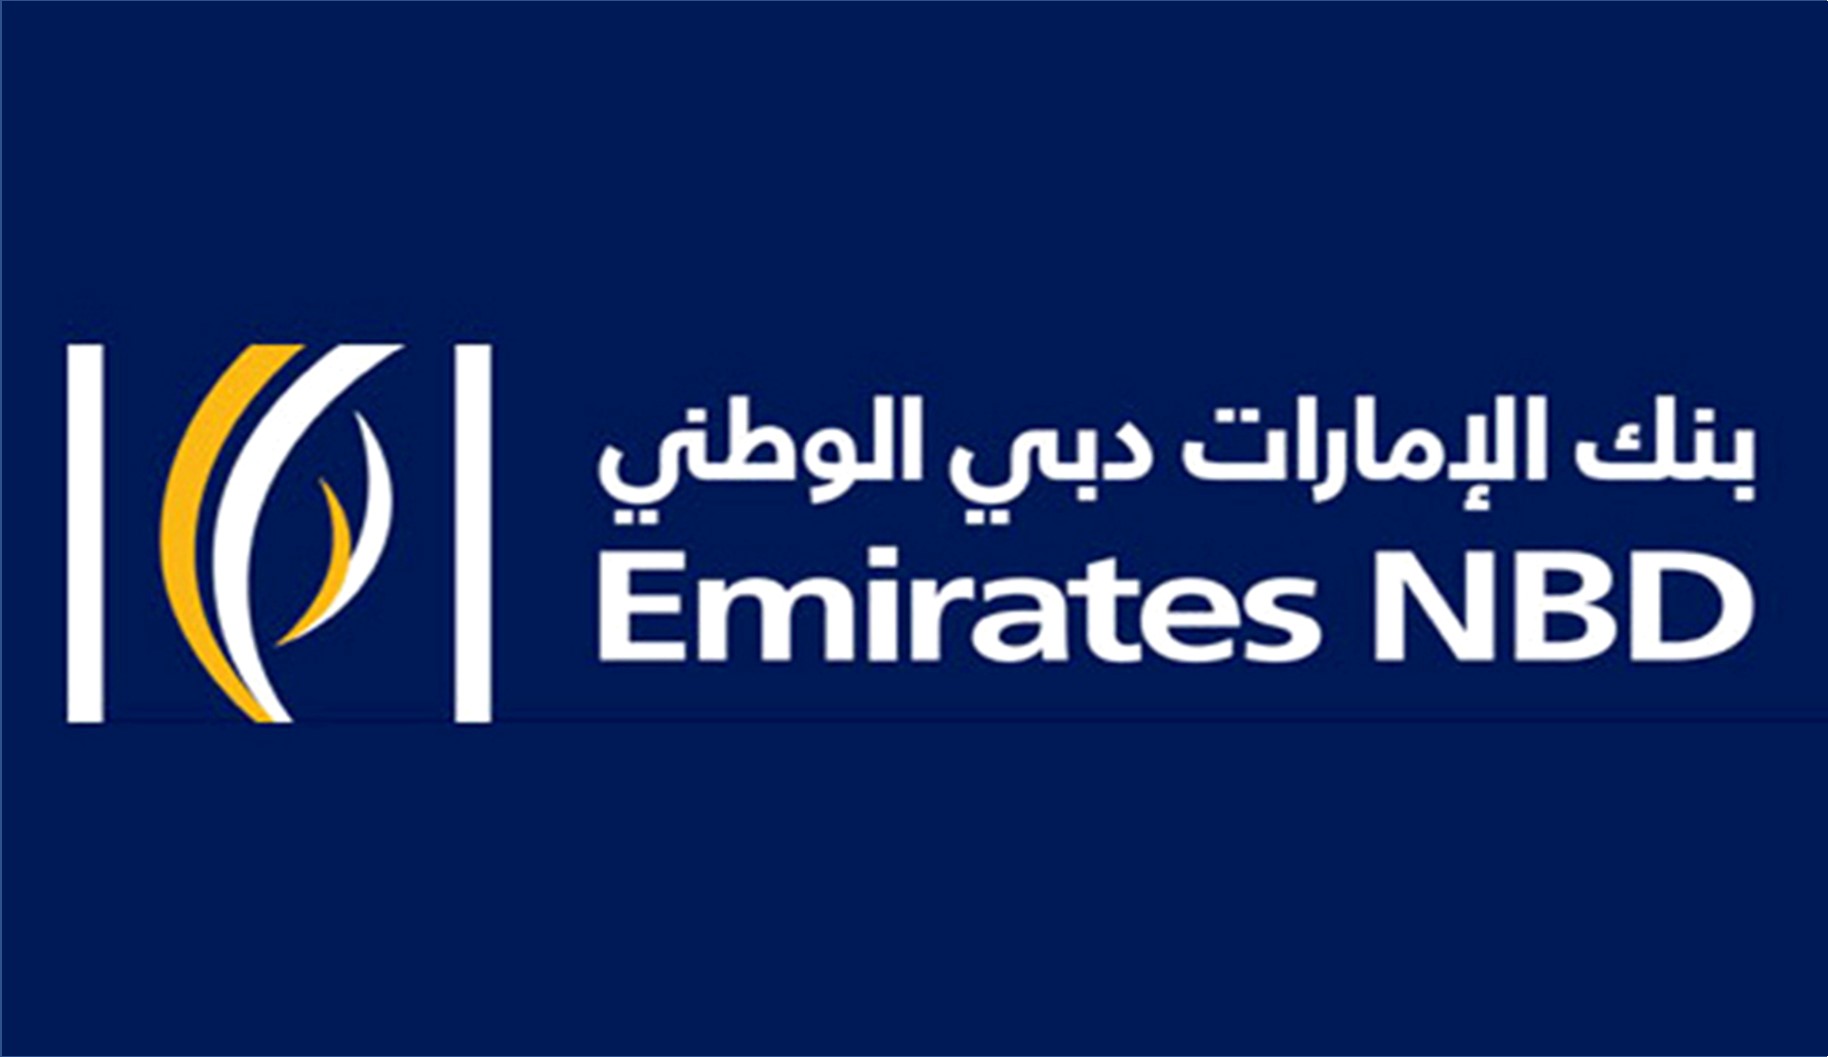 بنك الإمارات دبي الوطني يعلن عن وظائف للرجال والنساء